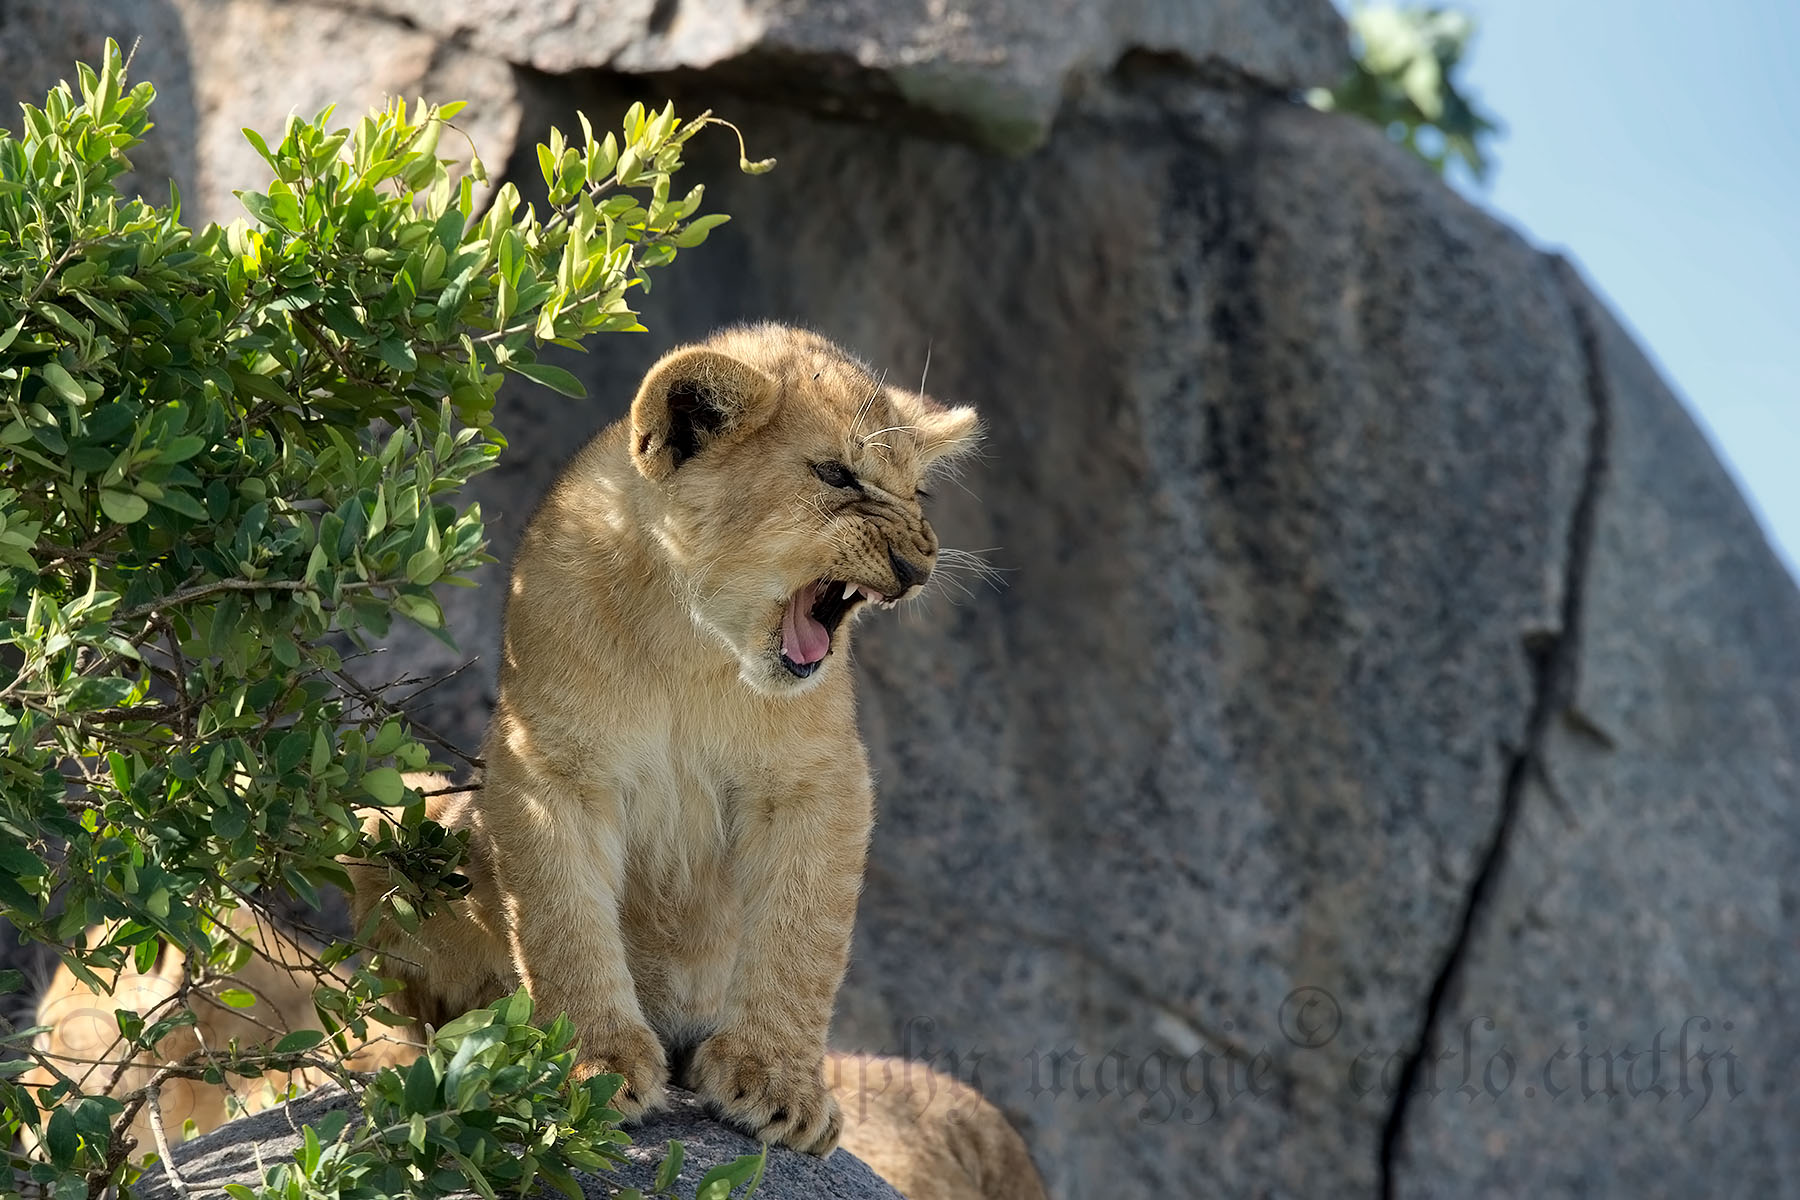 Cucciolo di leone - prove tecniche d'aggressività...